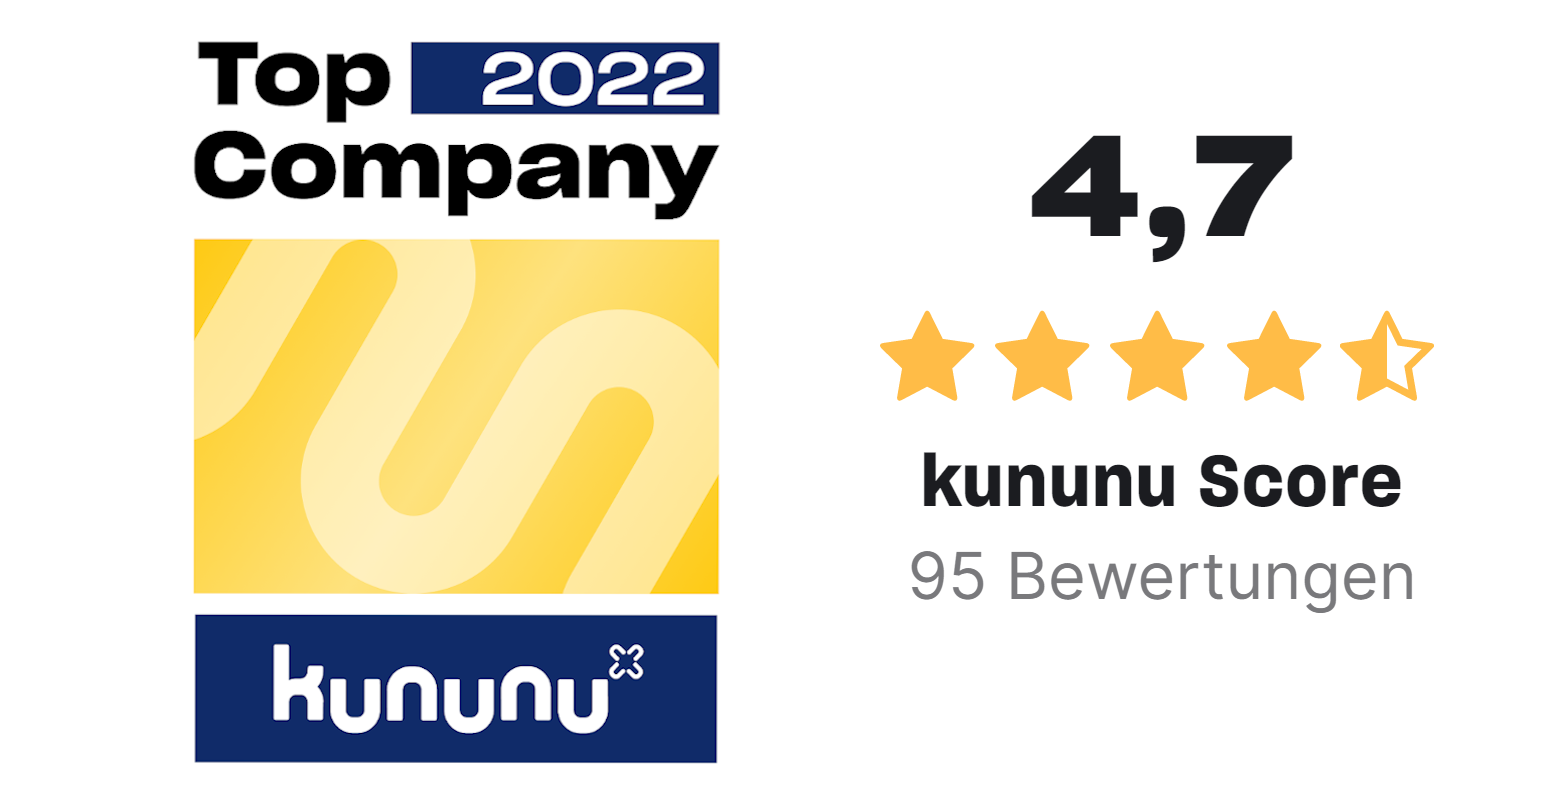 Kununu: Top Compancy 2022 und 4.7 Kununu-Score